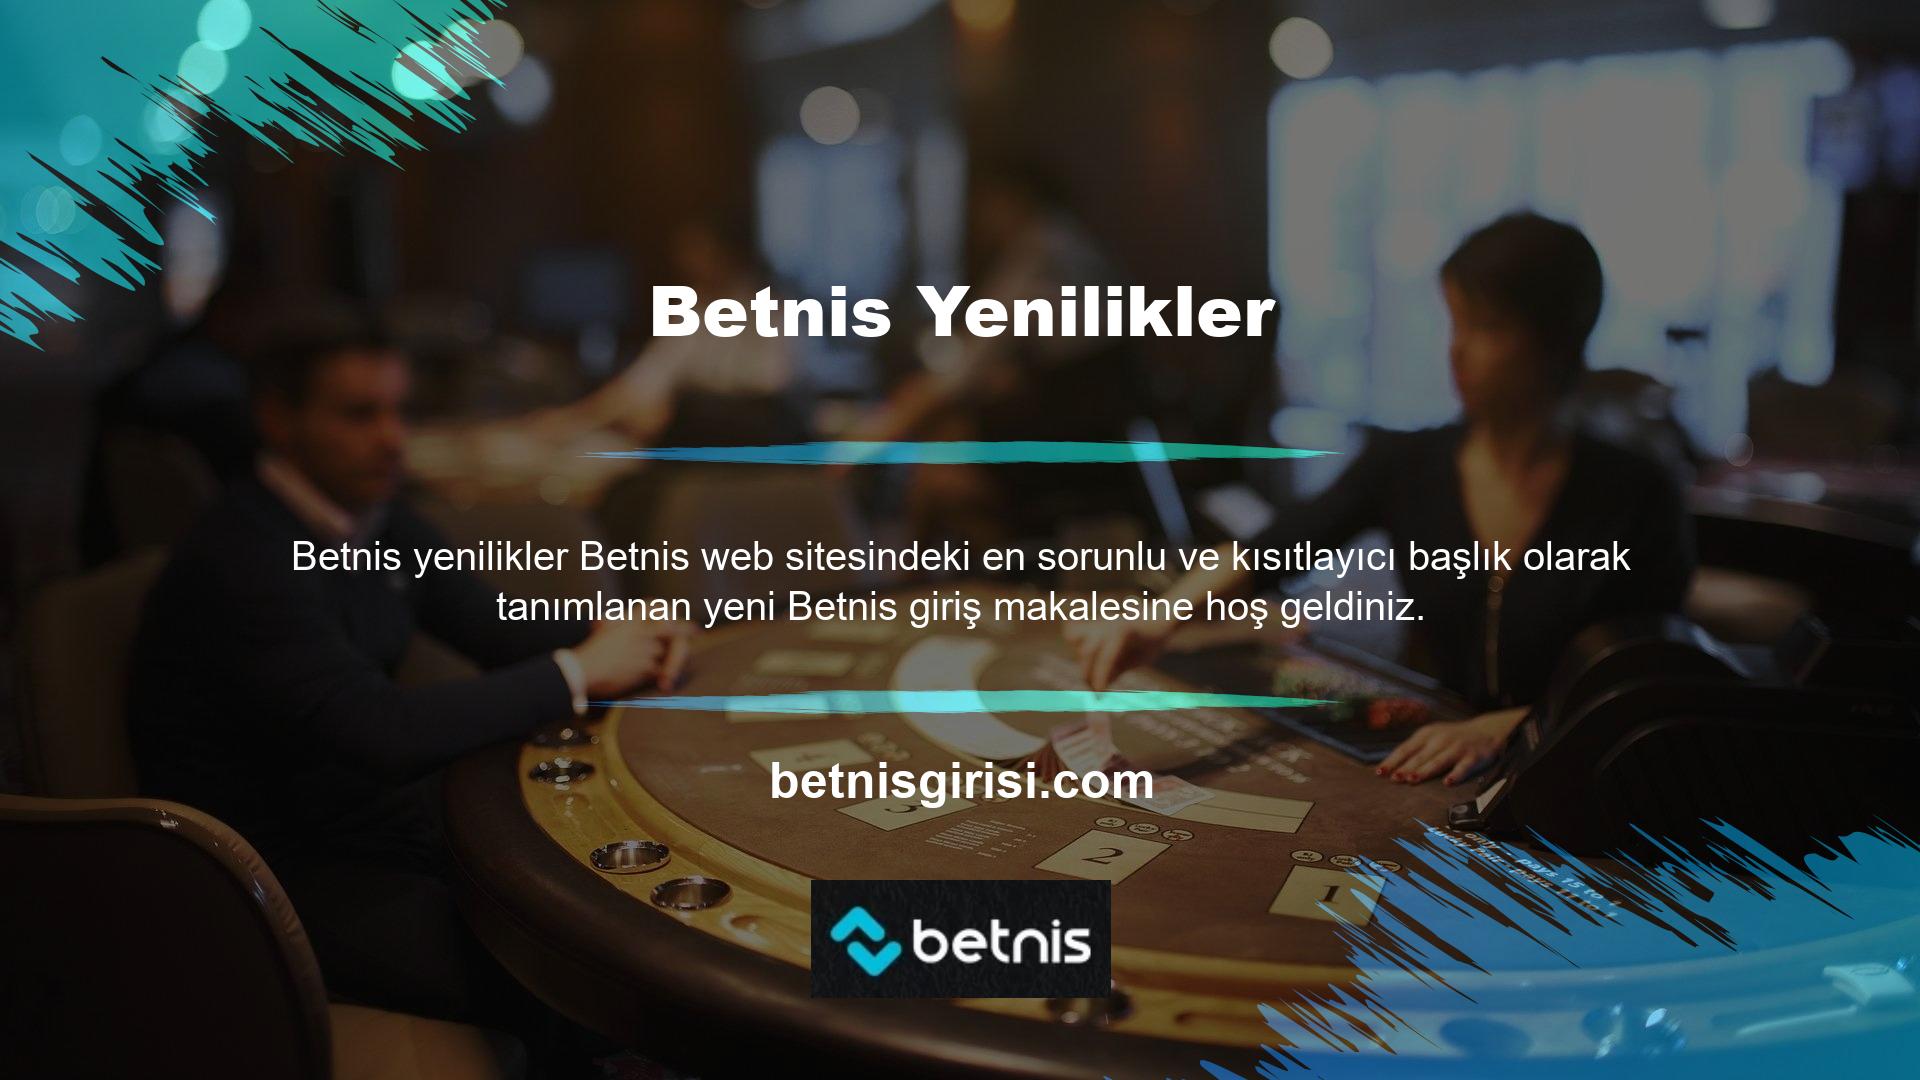 Tüm casino sitelerinde olduğu gibi bunu da çok iyi biliyoruz BTK’nın yasaklama kararını öğrenince kapattığı sitelerden biri de Betnis oldu